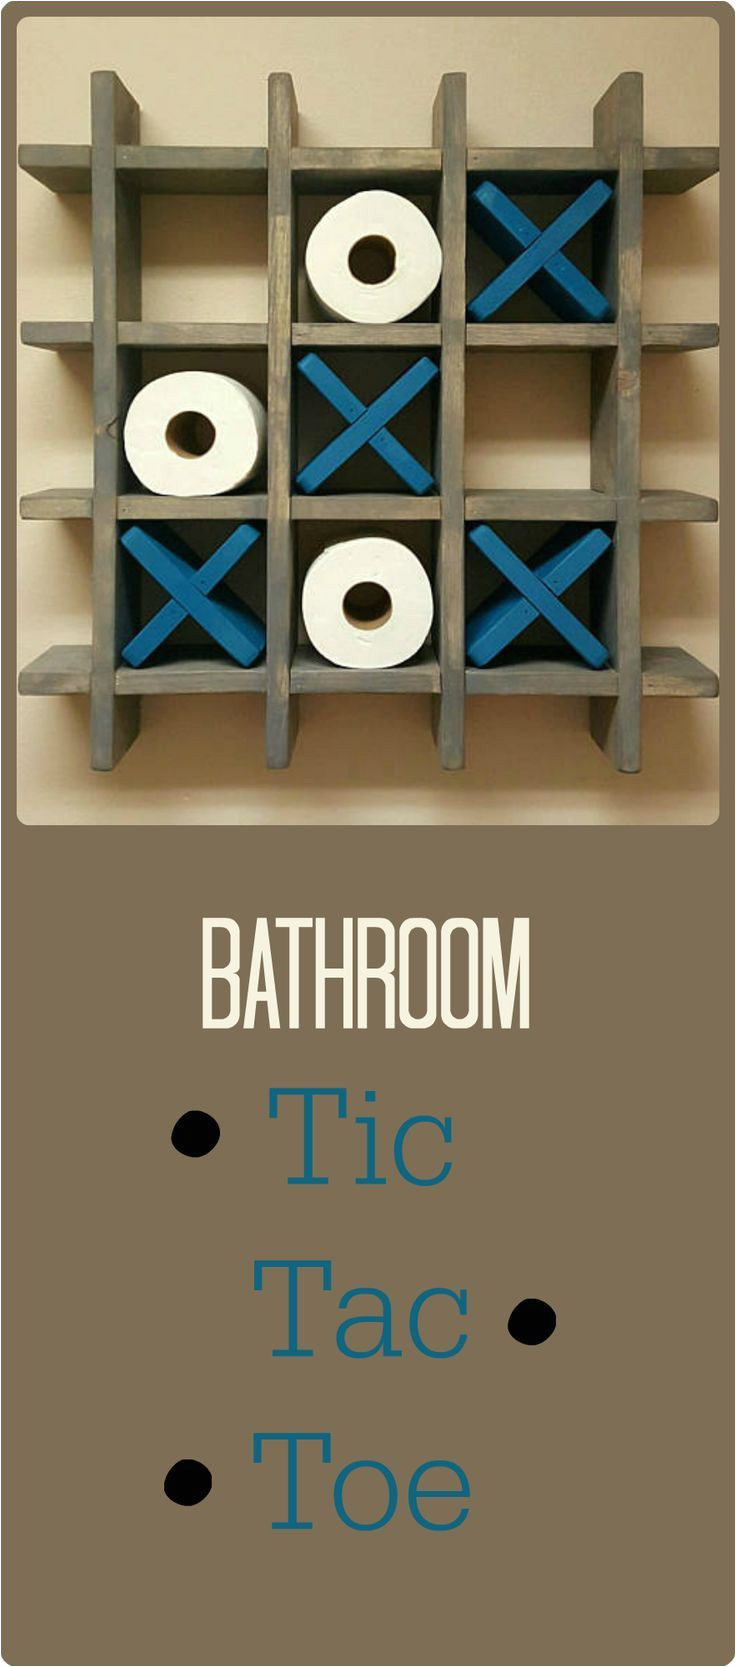 Tic Tac toe toilet Paper Holder Bathroom Tic Tac toe Made to order toilet Paper Holder toilet